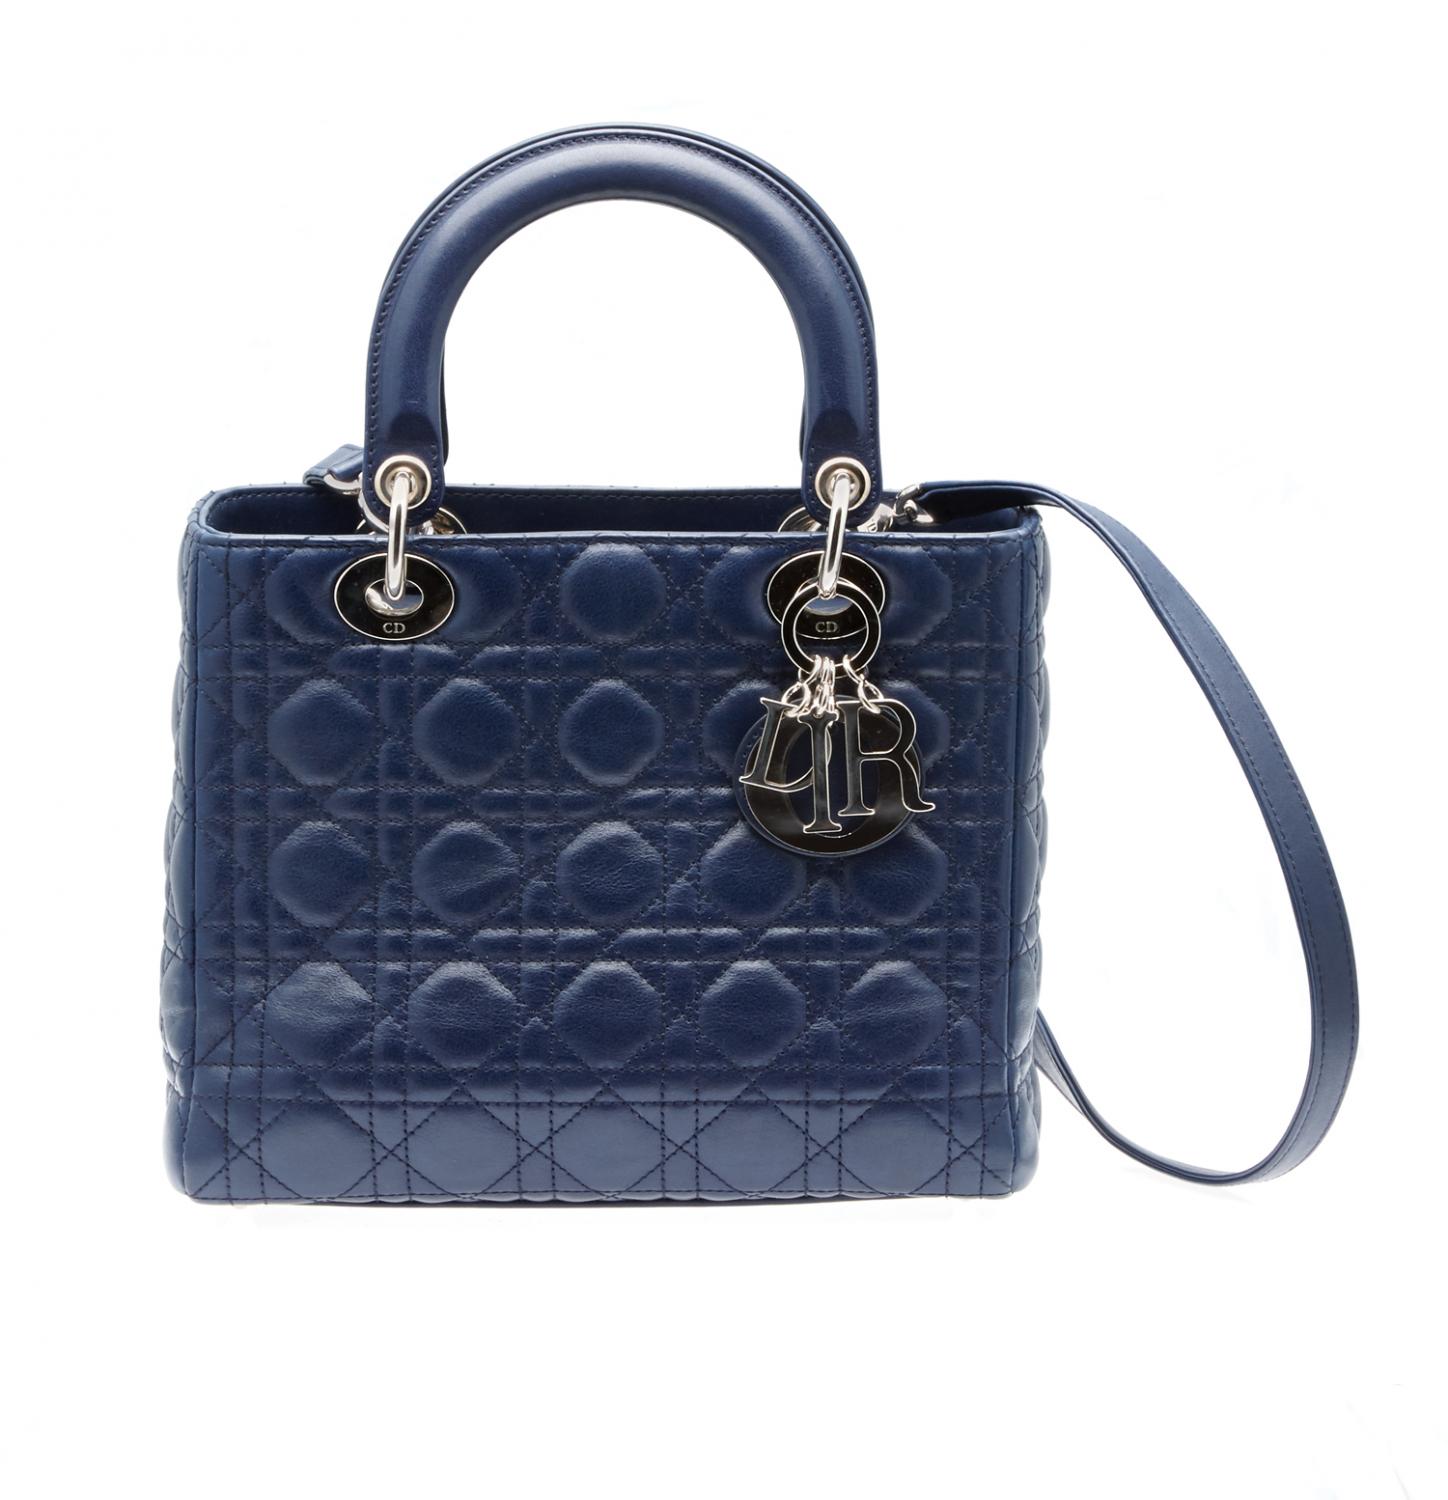 Dior Lady Dior Handbag - Price Estimate 